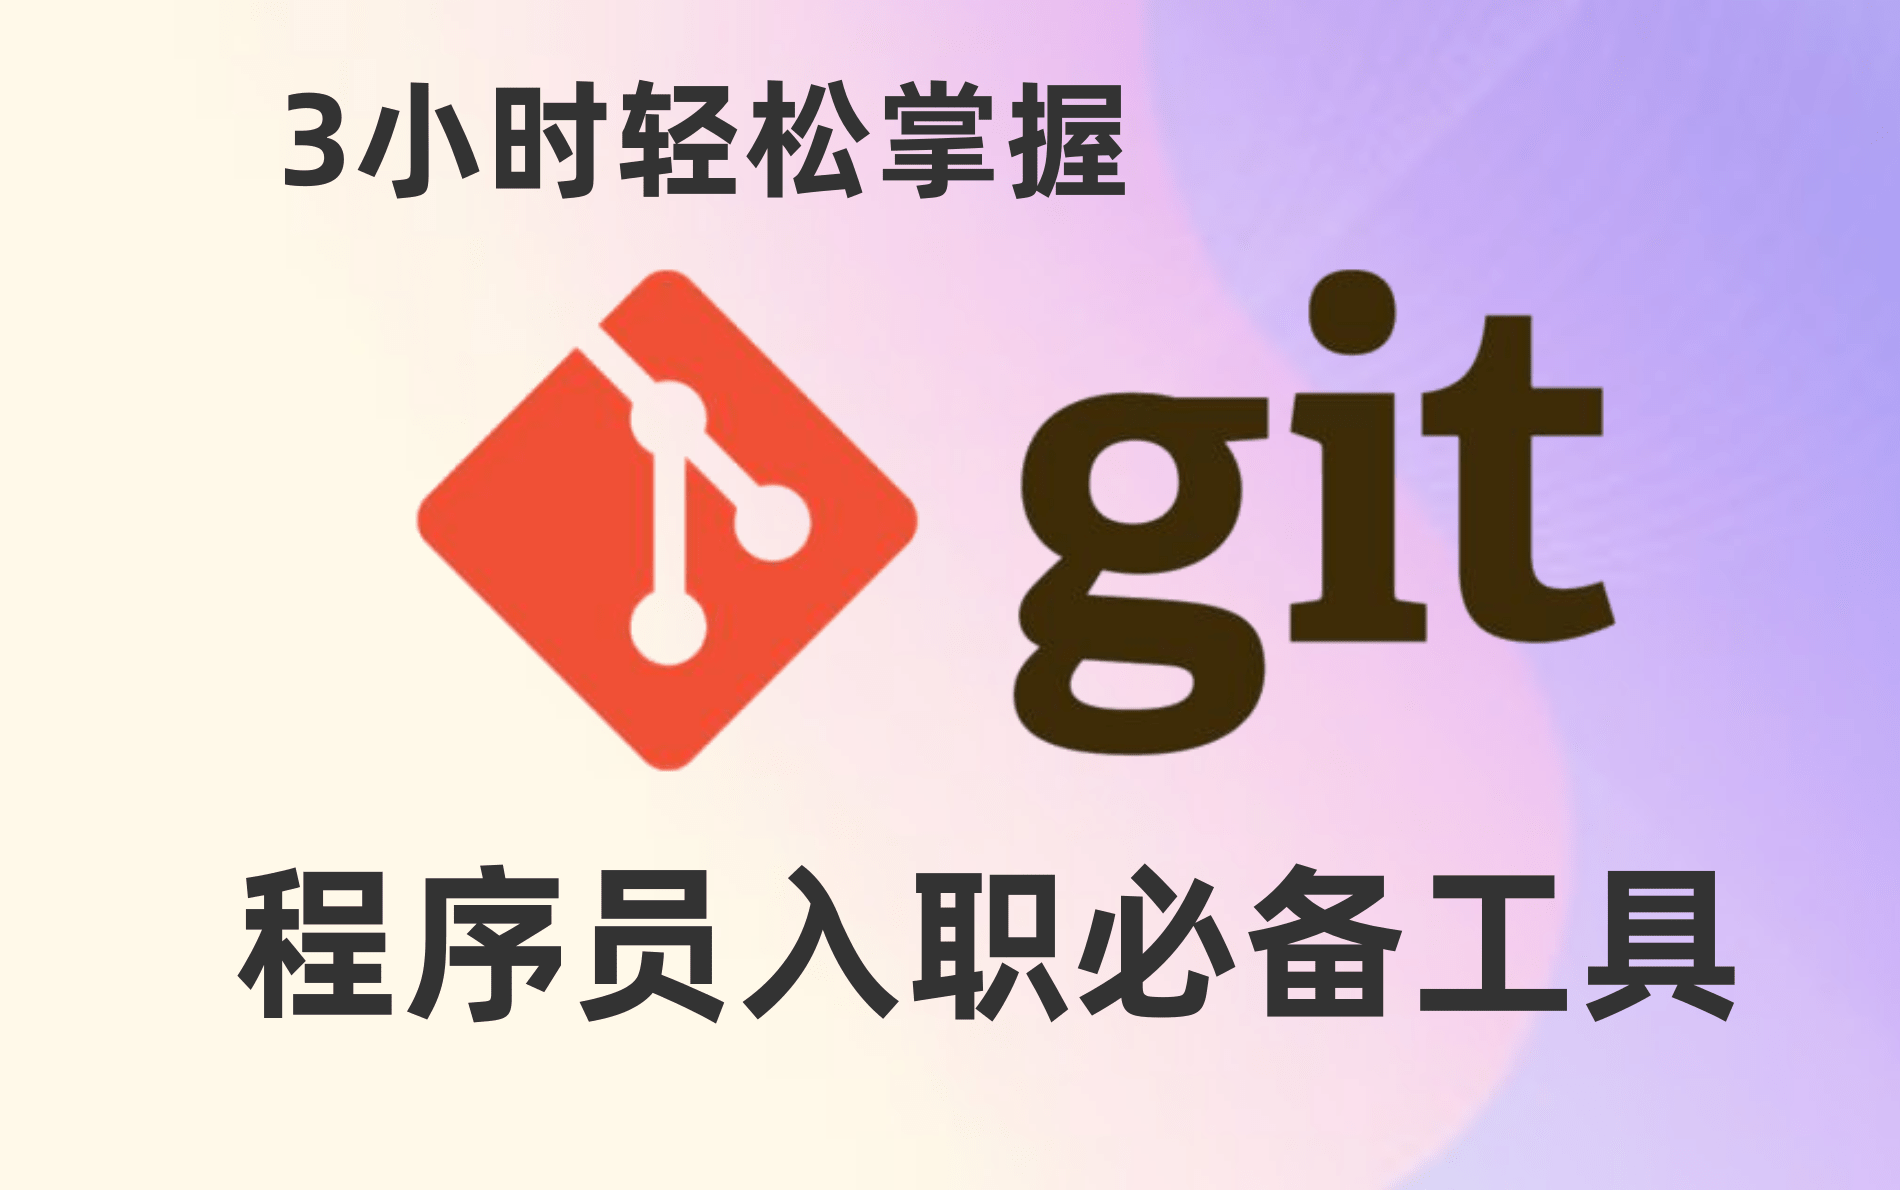 【推荐收藏】Git完整版详细到不能再详细教程-3小时玩转GitHub-程序员必学的版本控制工具-教你如何良性管理代码（附配套资料)